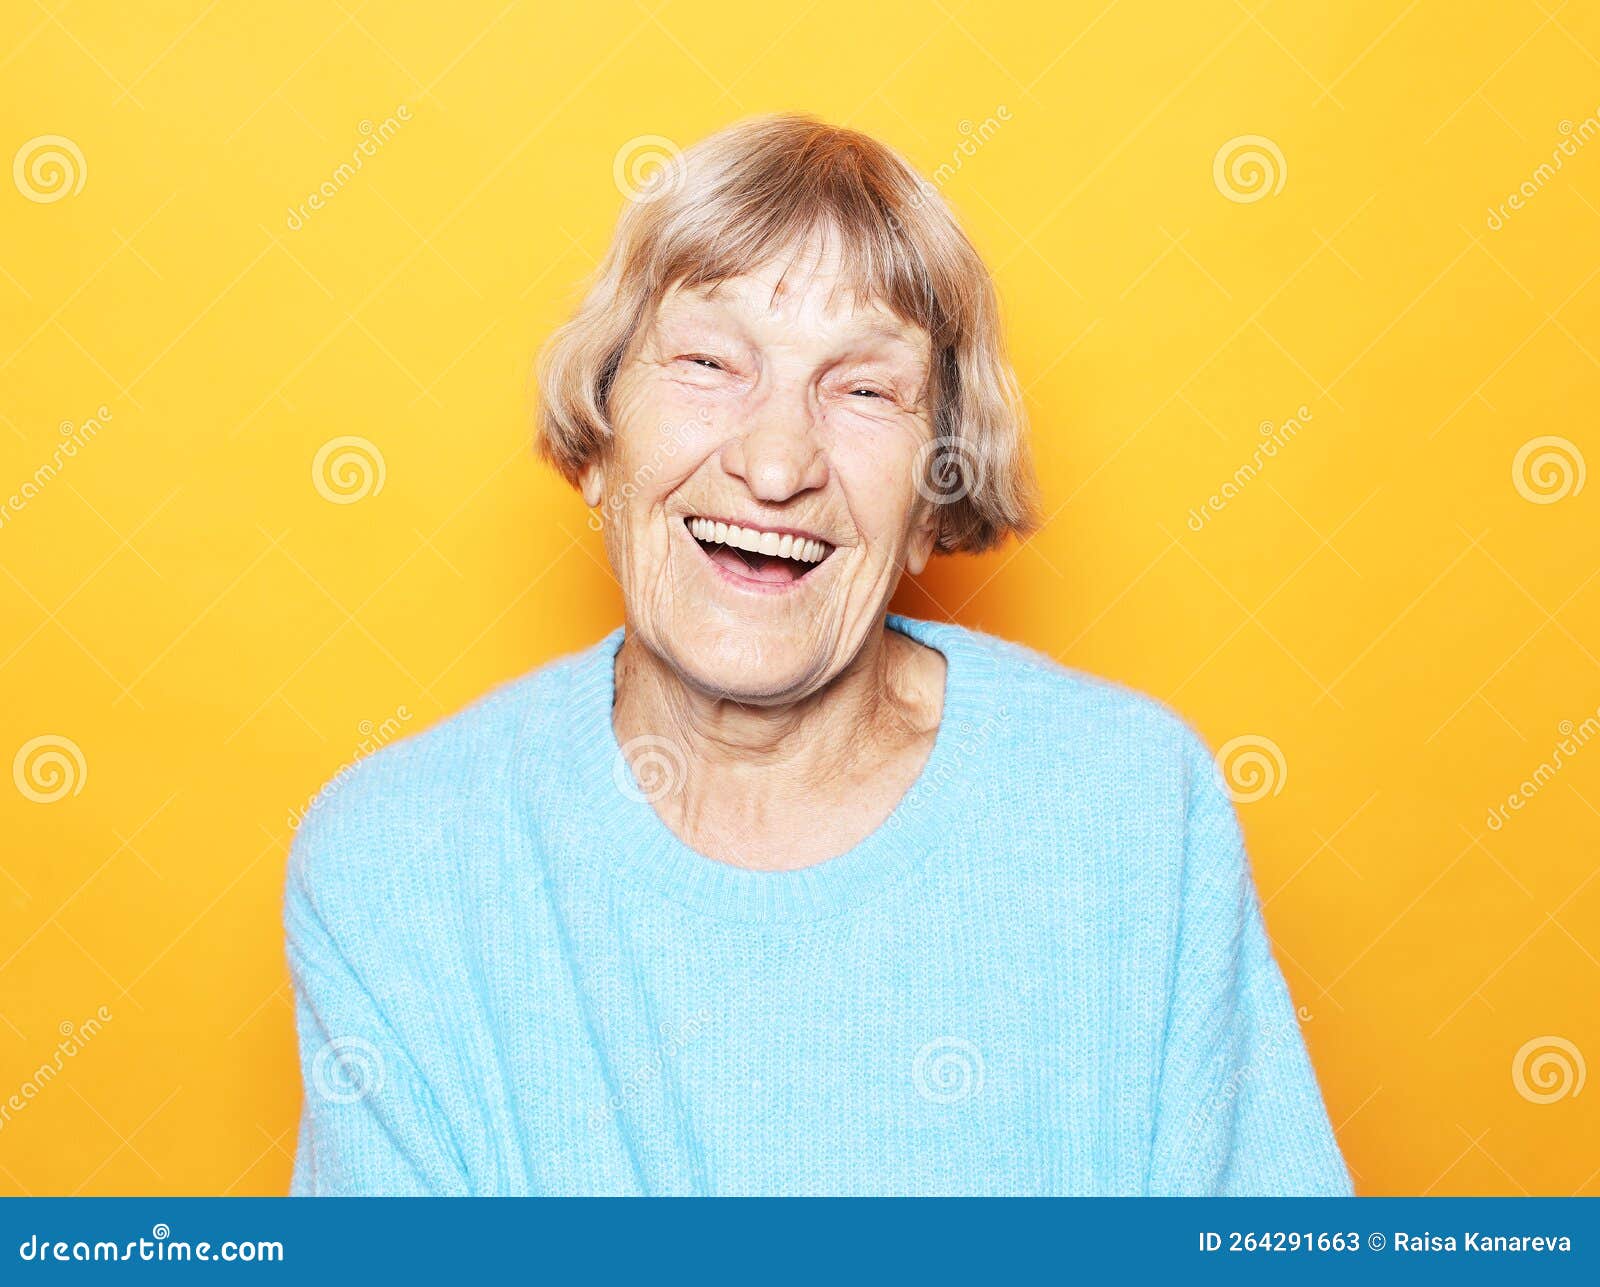 10. Blue Wigs for Grandmas - TheWigCompany.com - wide 9